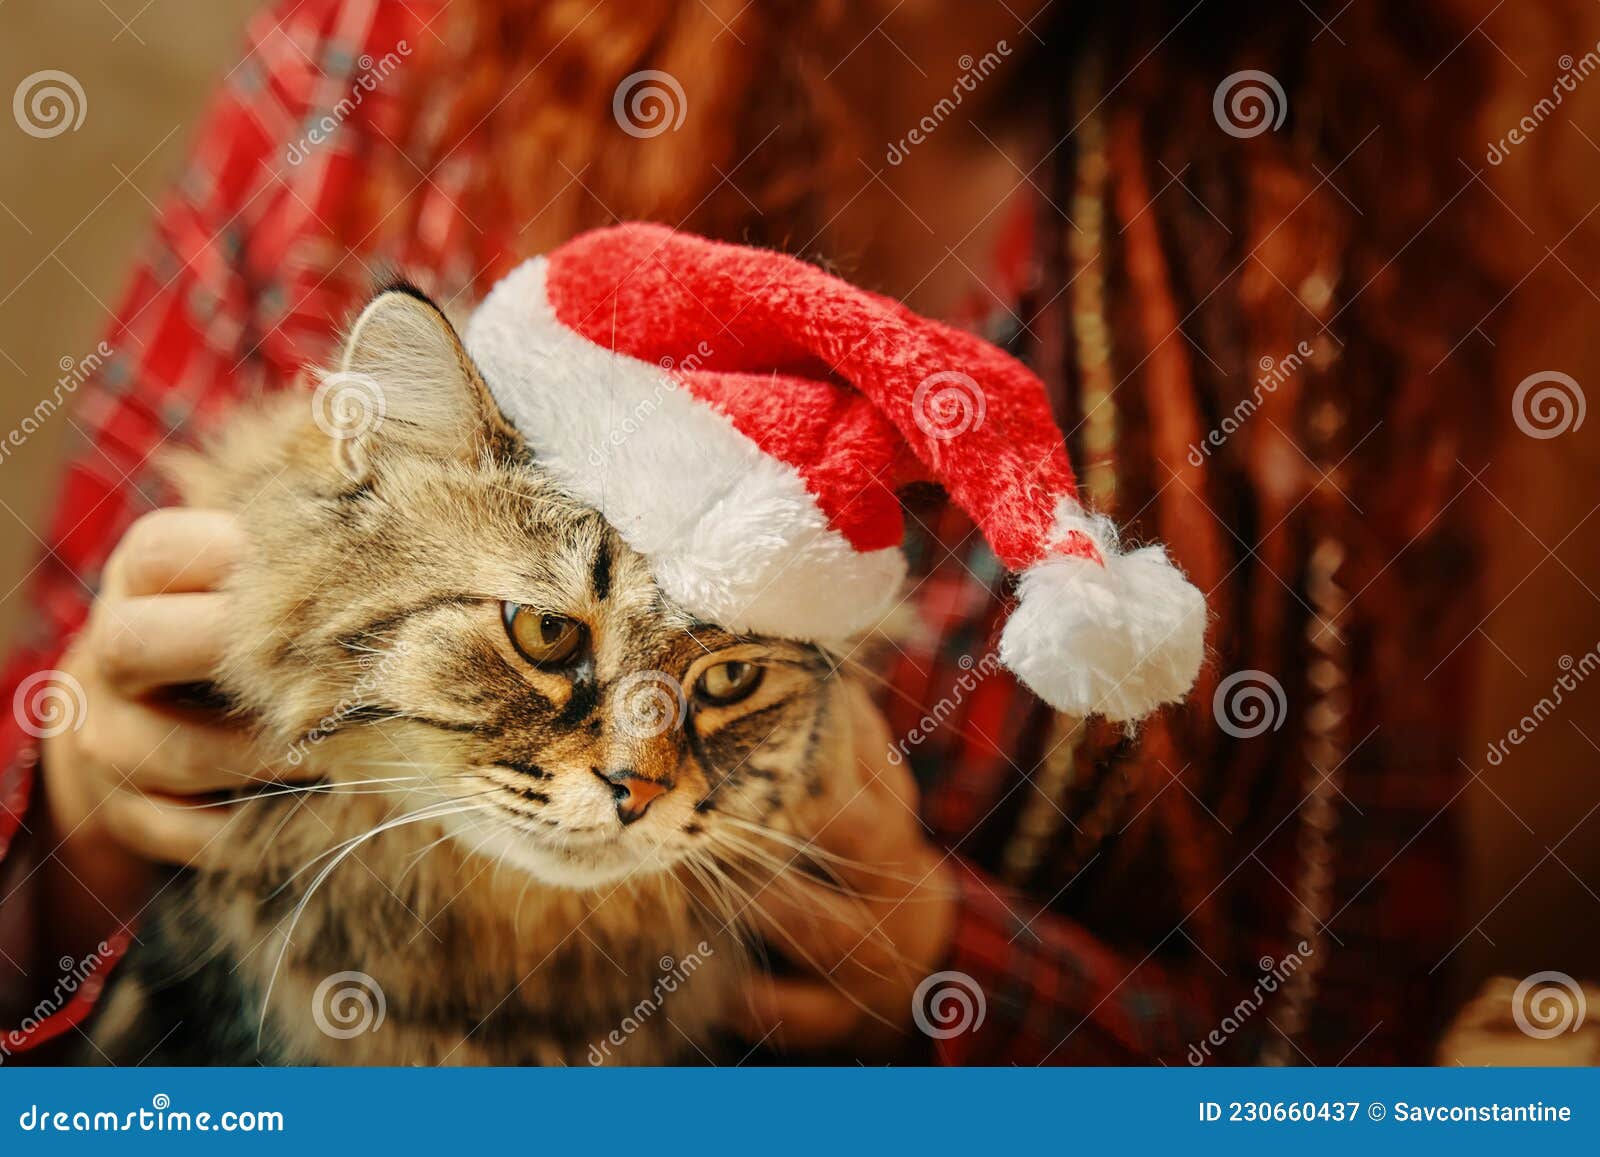 Chica De Pijama De Yegua Sostiene Un Gato Esponjoso En Sombrero Santa Claus. Imagen de archivo - Imagen de animal: 230660437